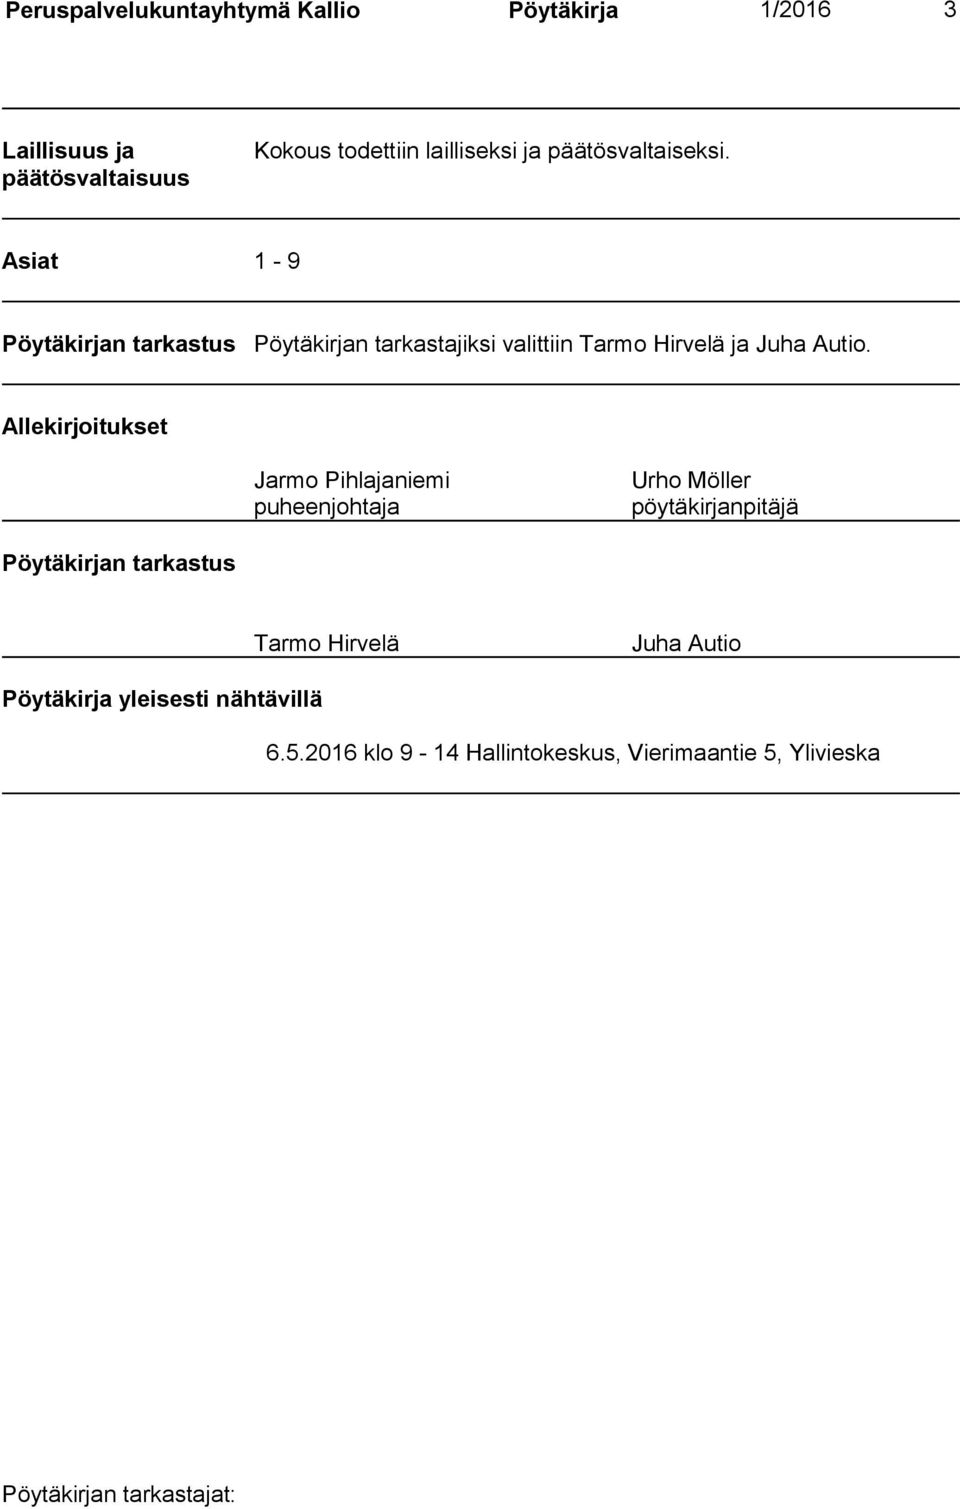 Asiat 1-9 Pöytäkirjan tarkastus Pöytäkirjan tarkastajiksi valittiin Tarmo Hirvelä ja Juha Autio.